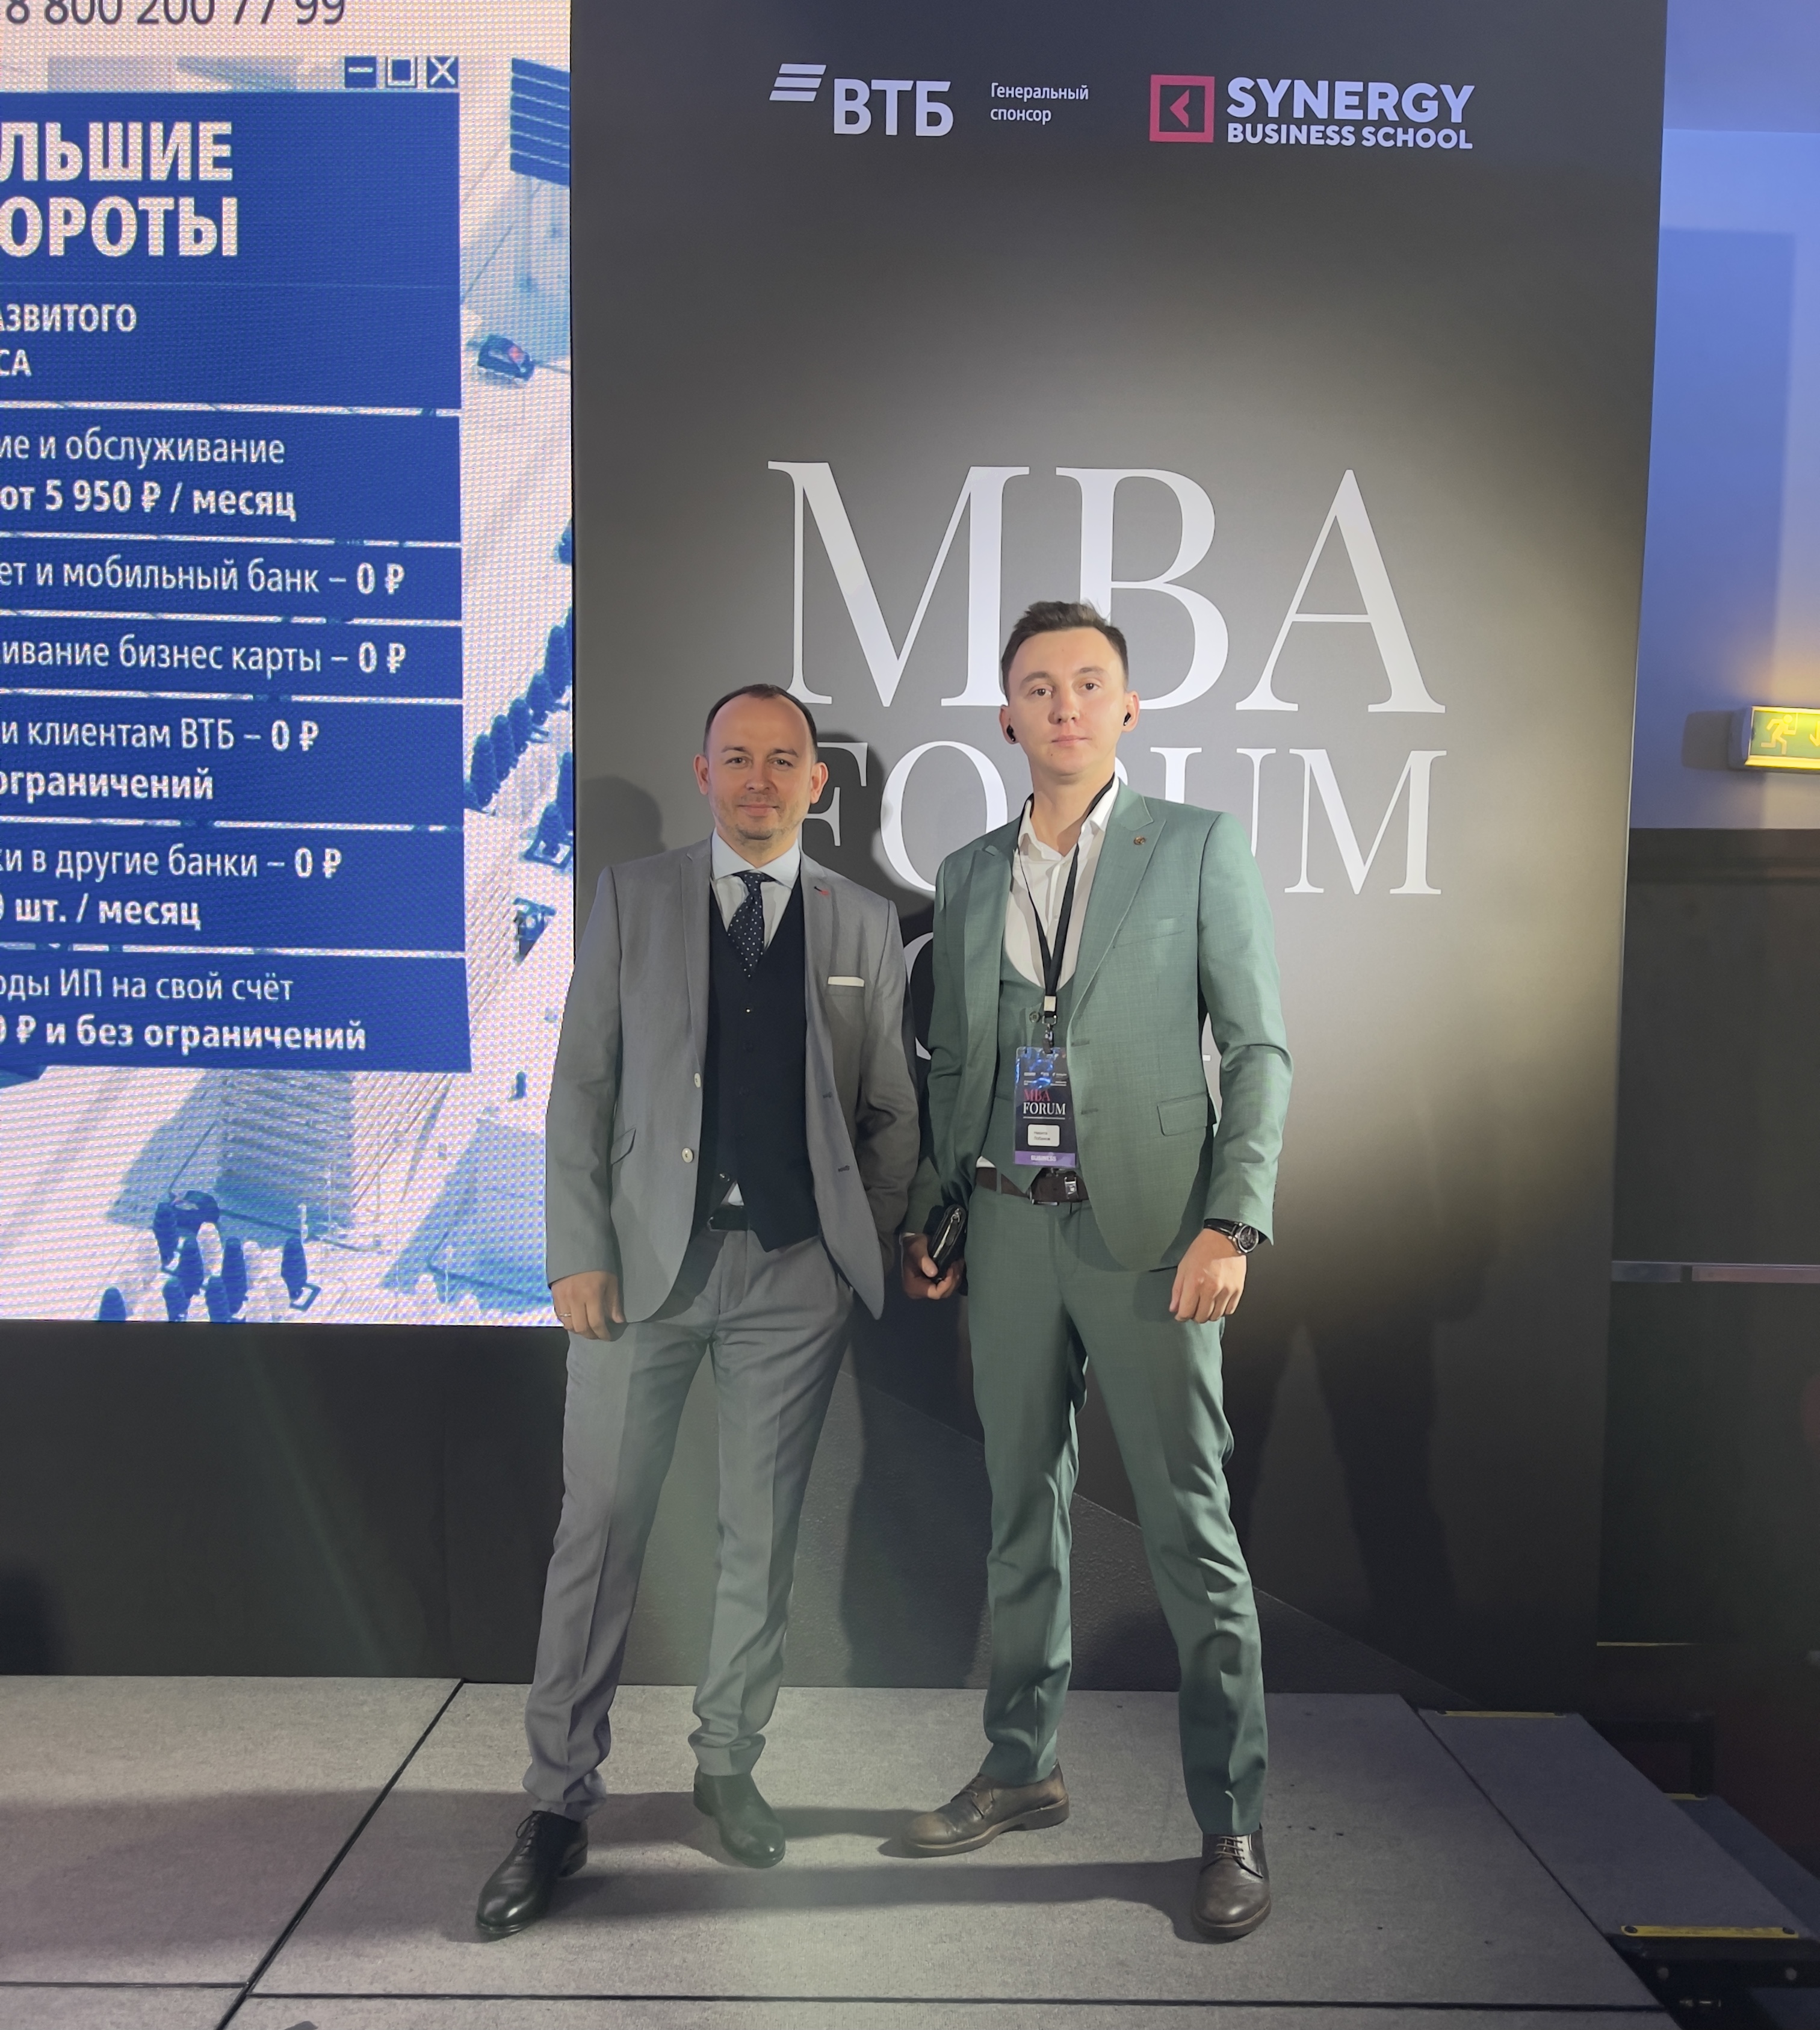 MBA Forum 2021